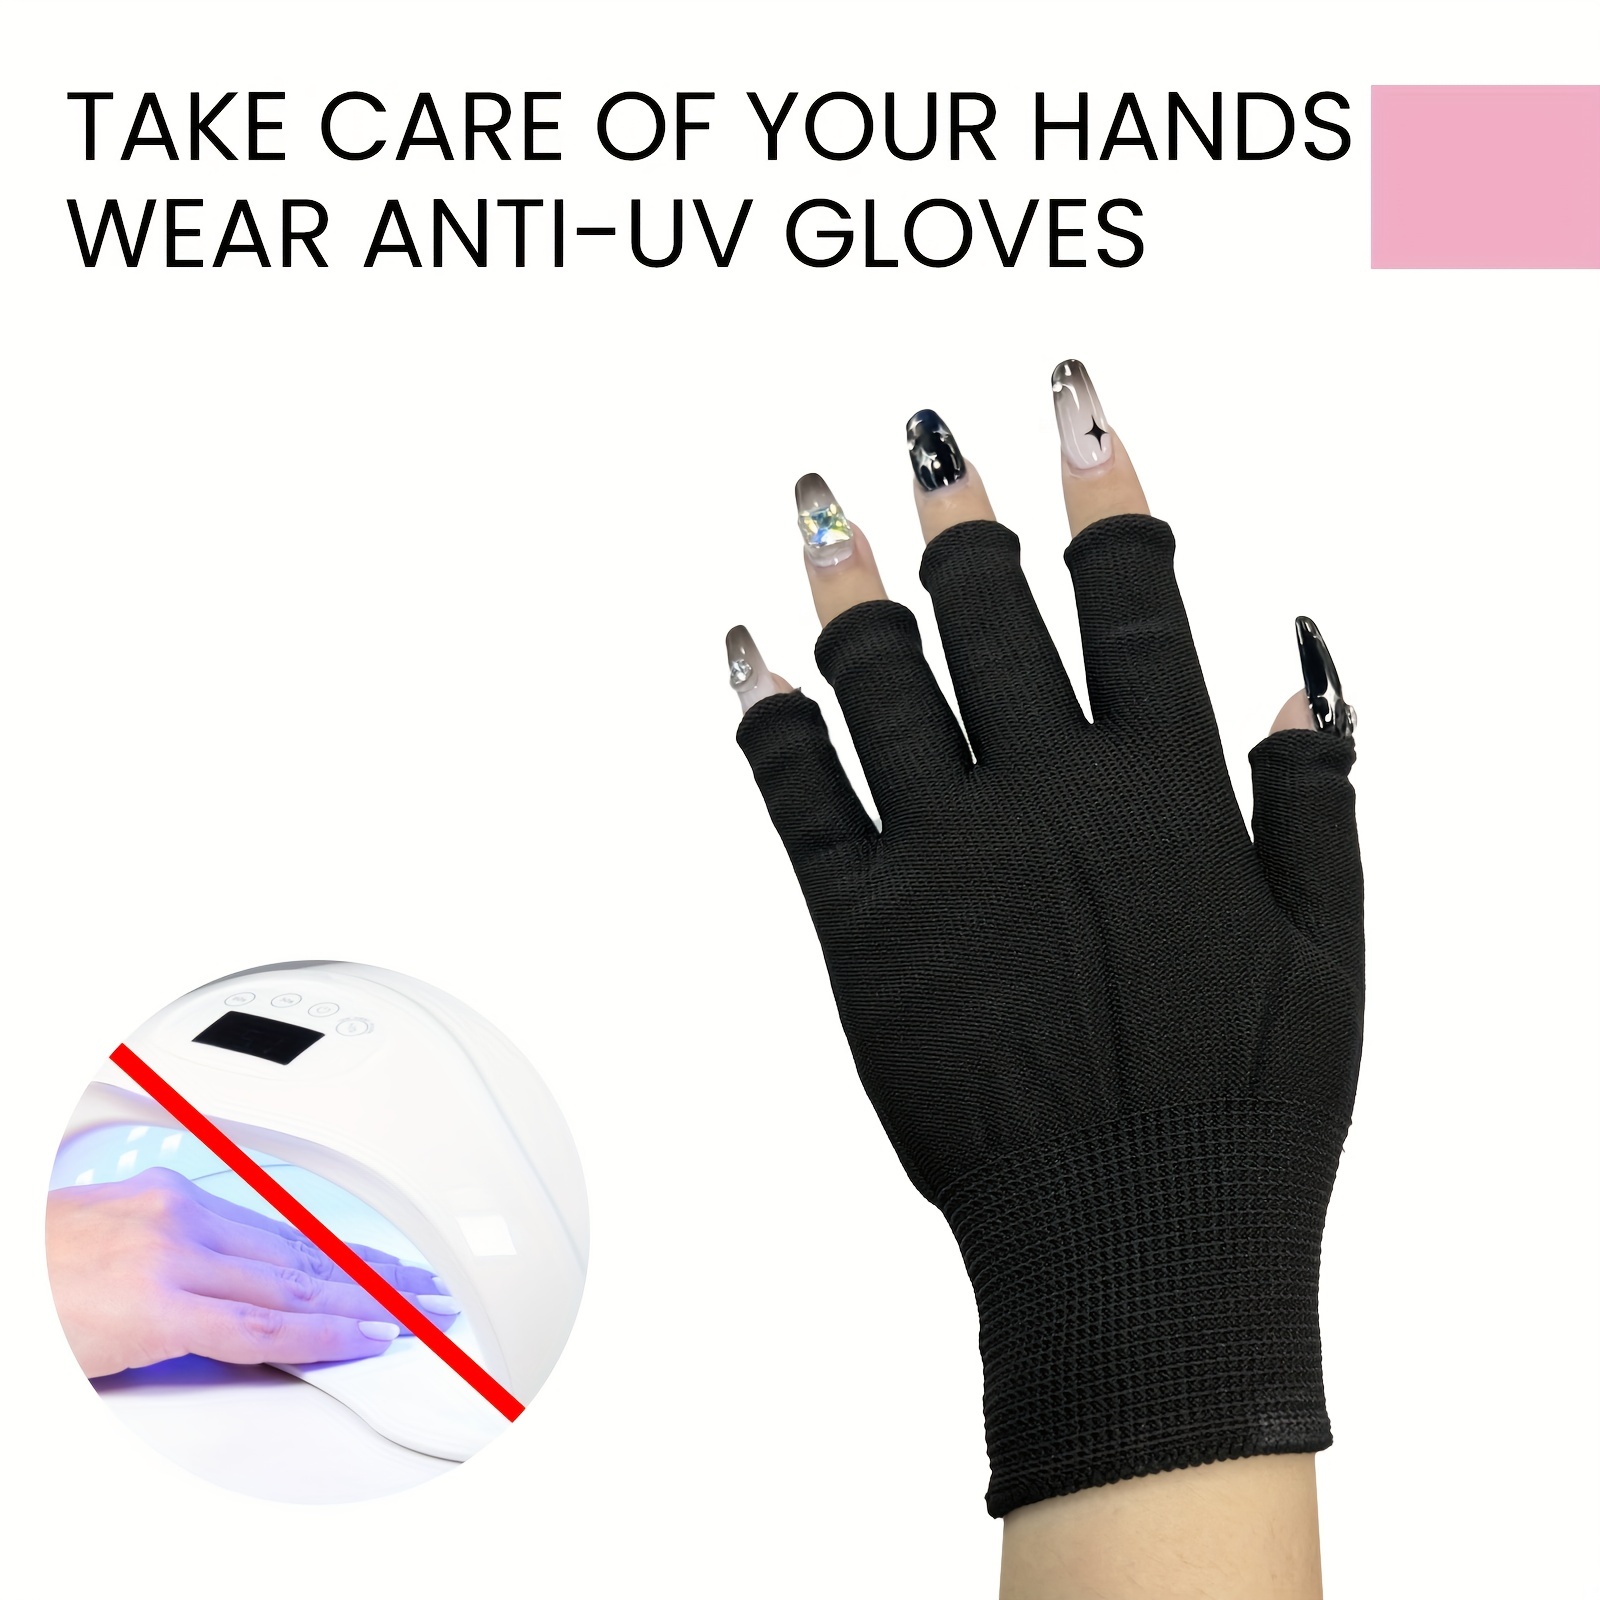 UV Gloves For Nails,Prevent Fingers From UV Light,UV Protection